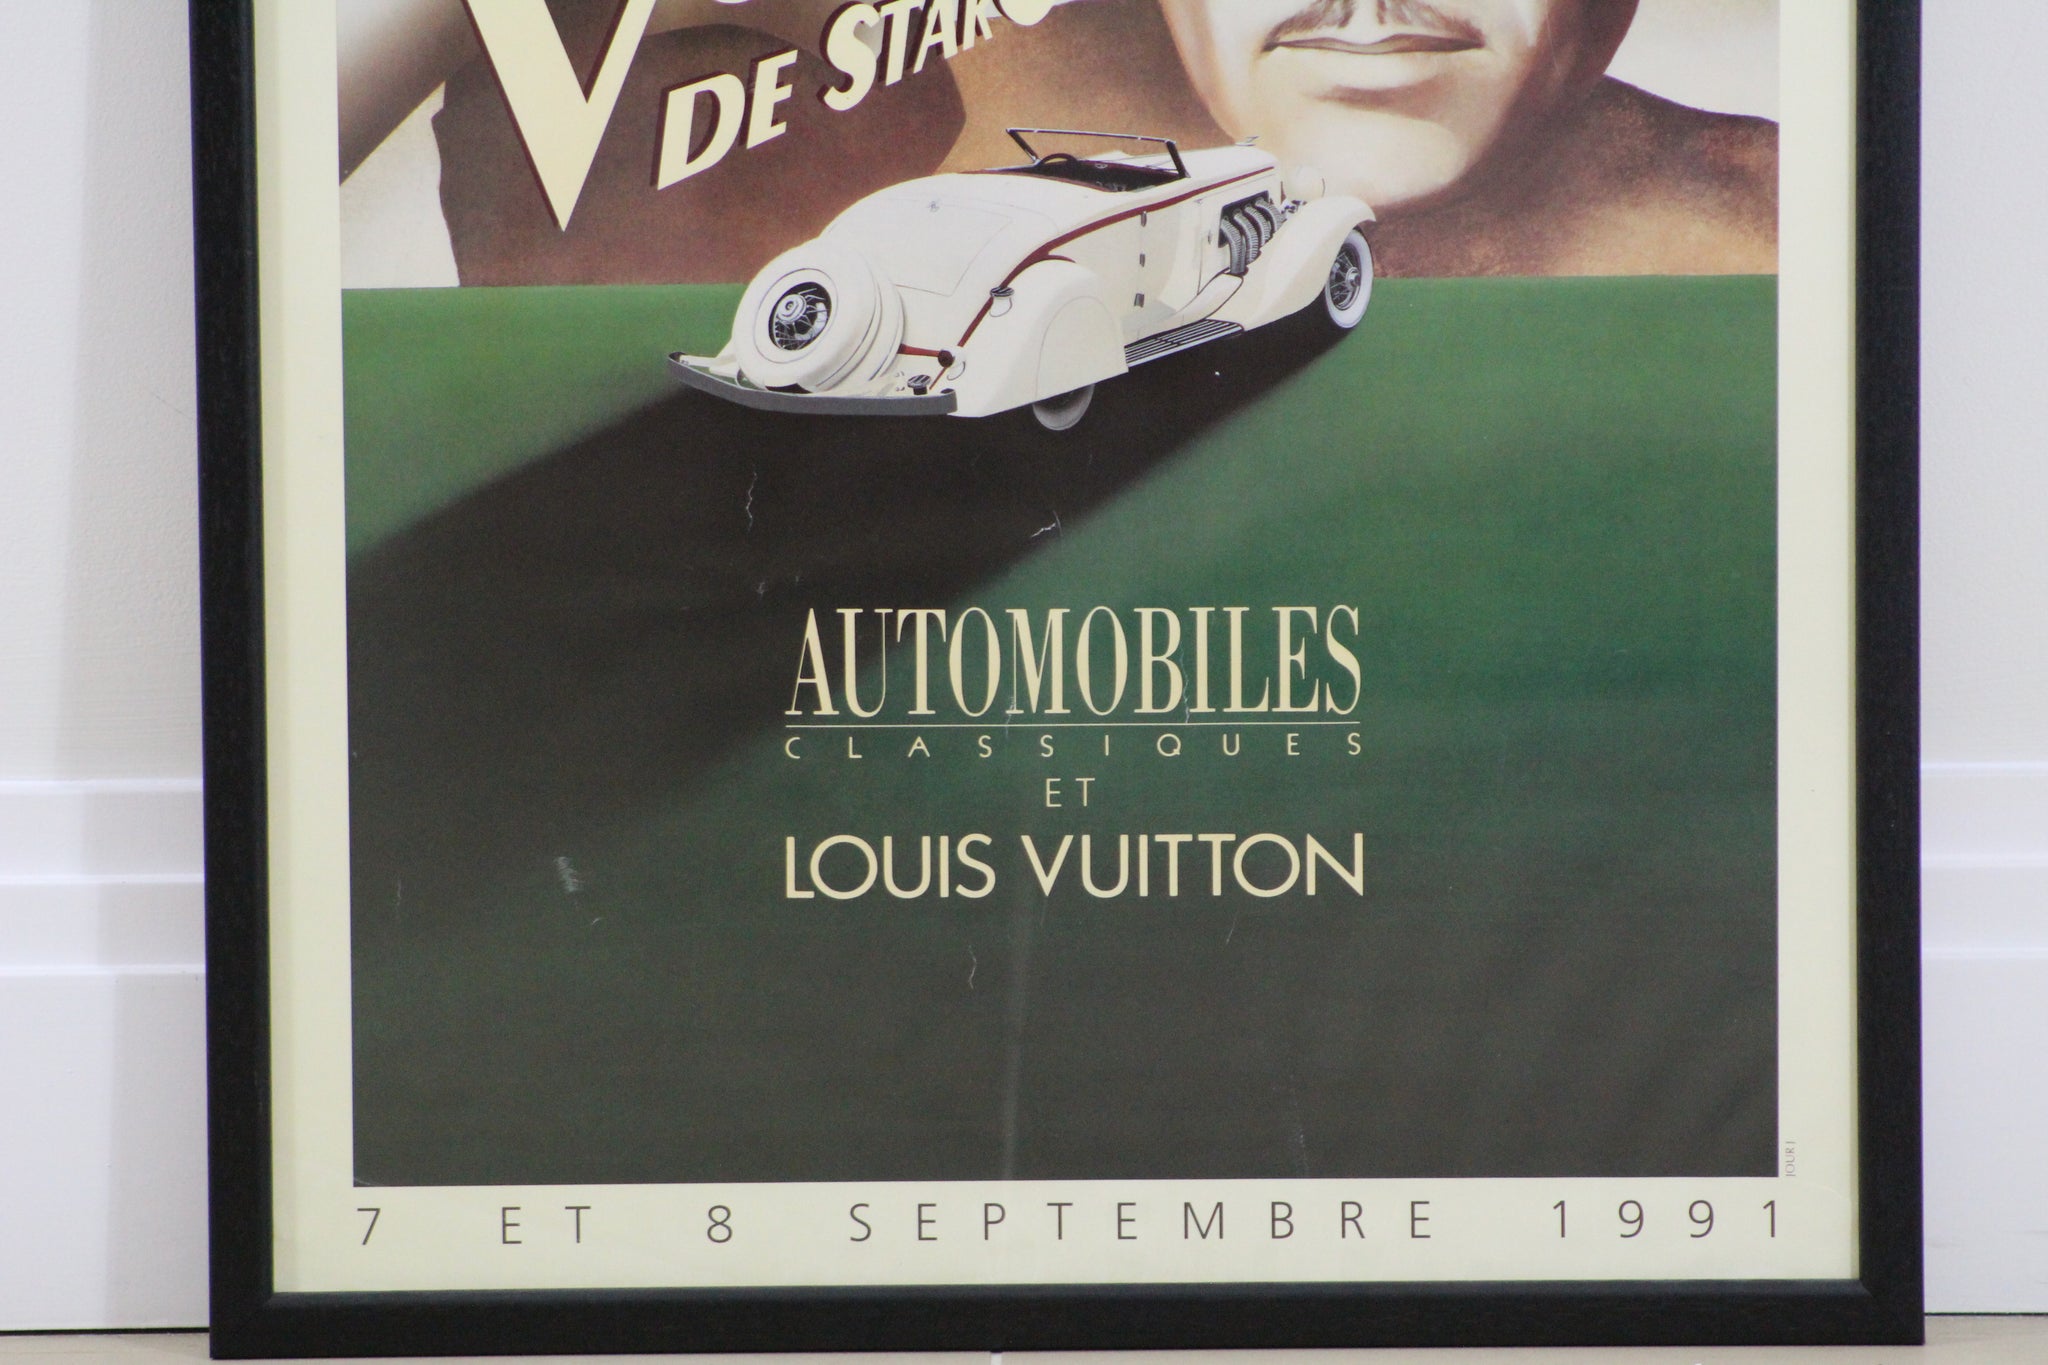 Concours Automobiles Classiques et Louis Vuitton - Parc de Bagatelle  (medium format)